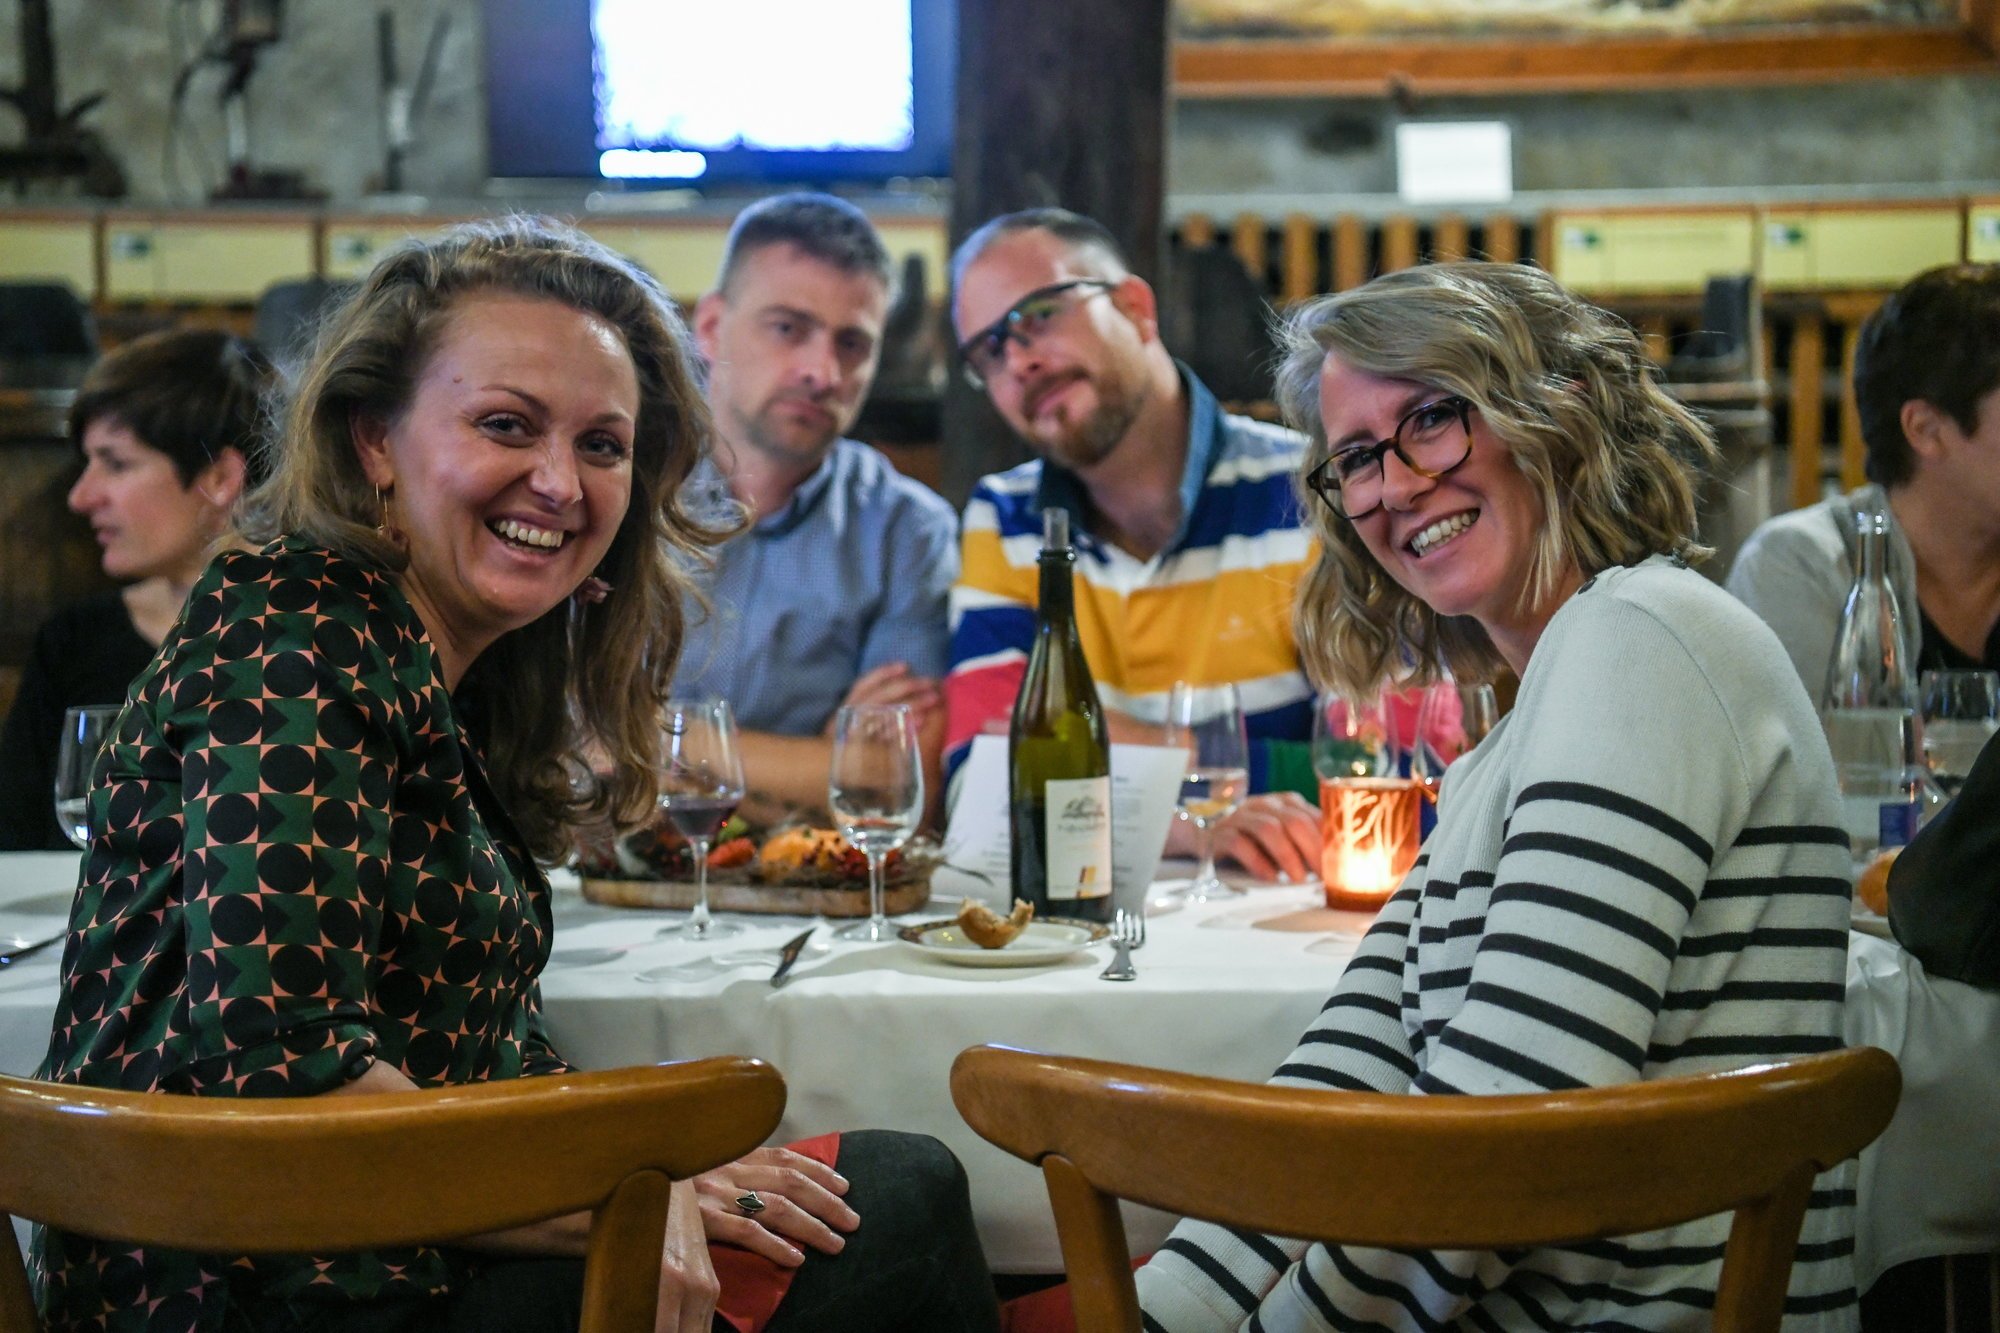 Quarante convives se sont réunis autour d'une même table dans la bonne humeur, à l'image de Malgorjata et Julien (à gauche)  accompagnés d'Eve et Arnaud.